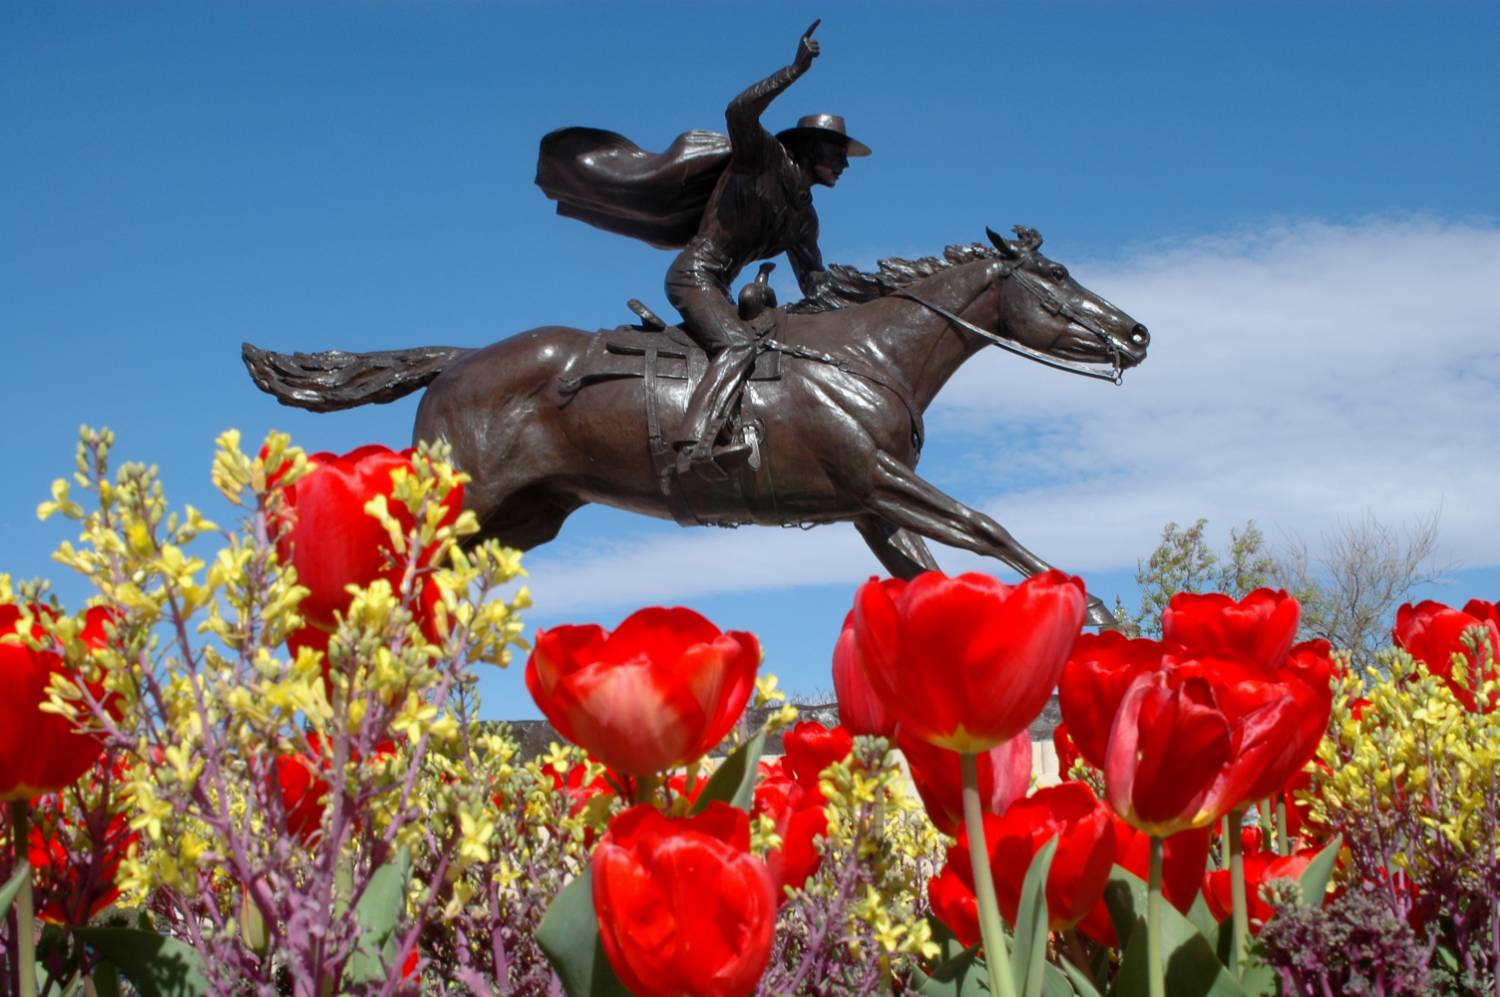 Masked Rider statue